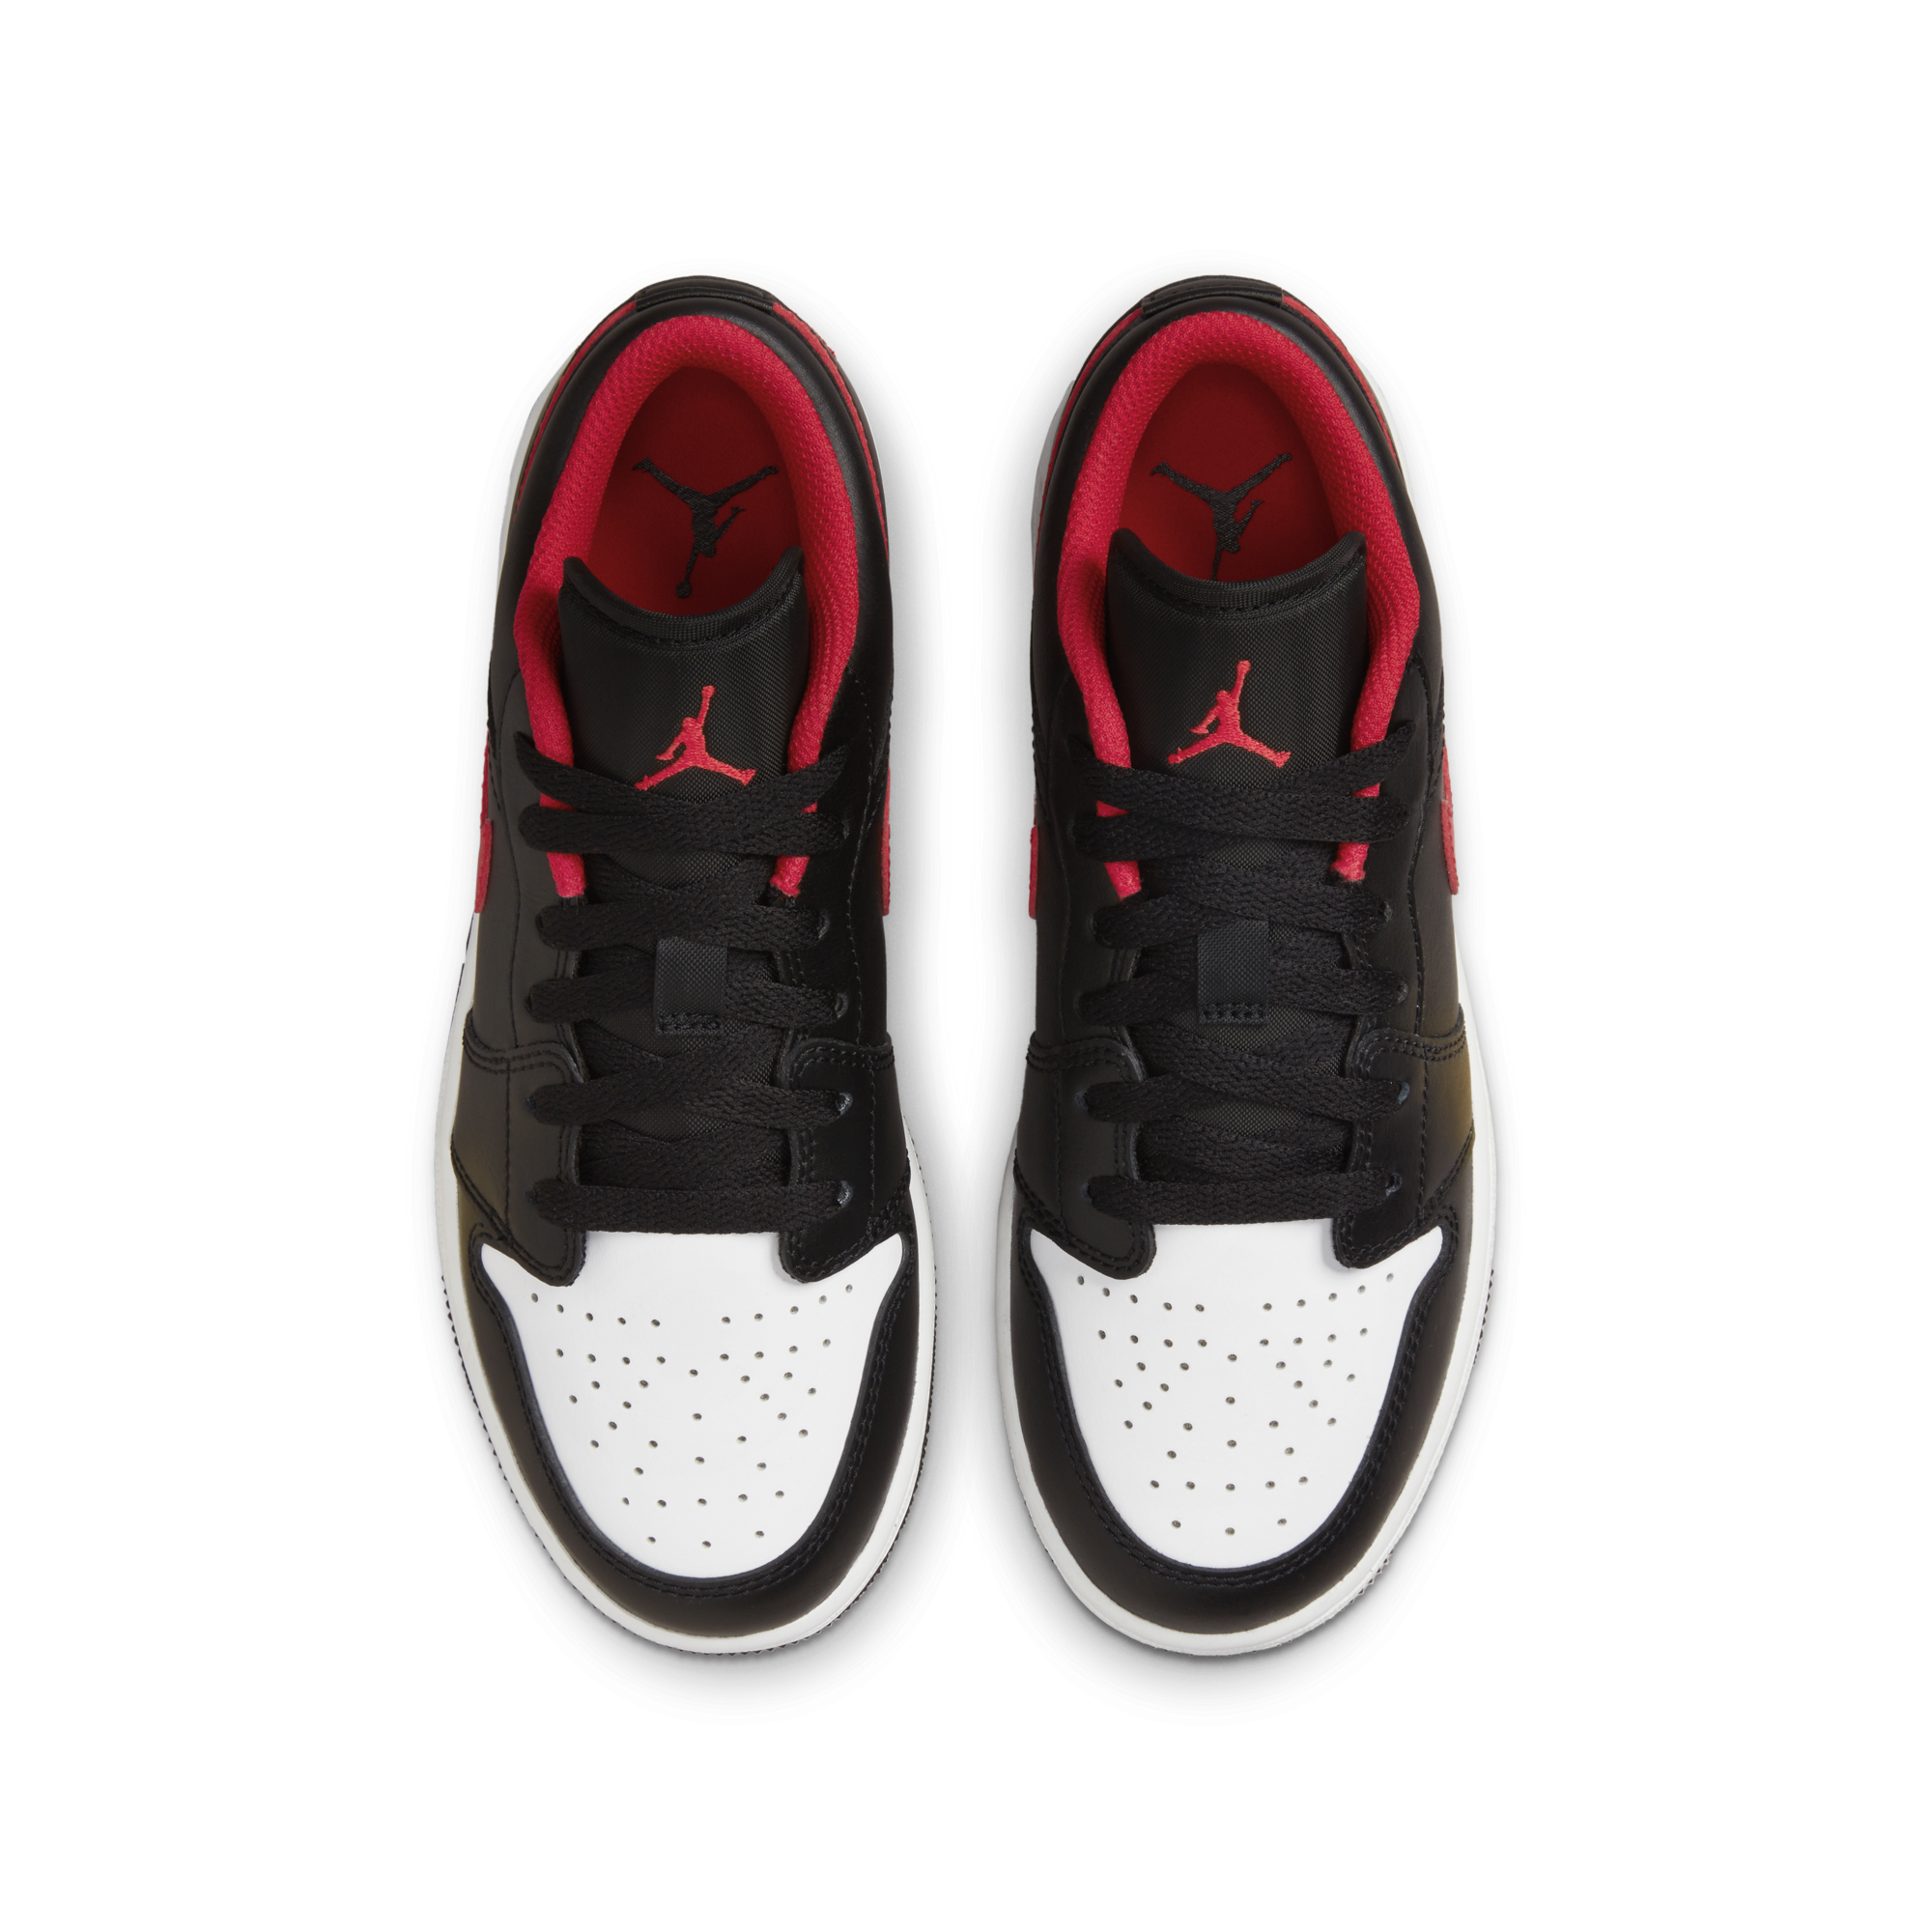 Nike Air Jordan 1 Retro Low (GS)